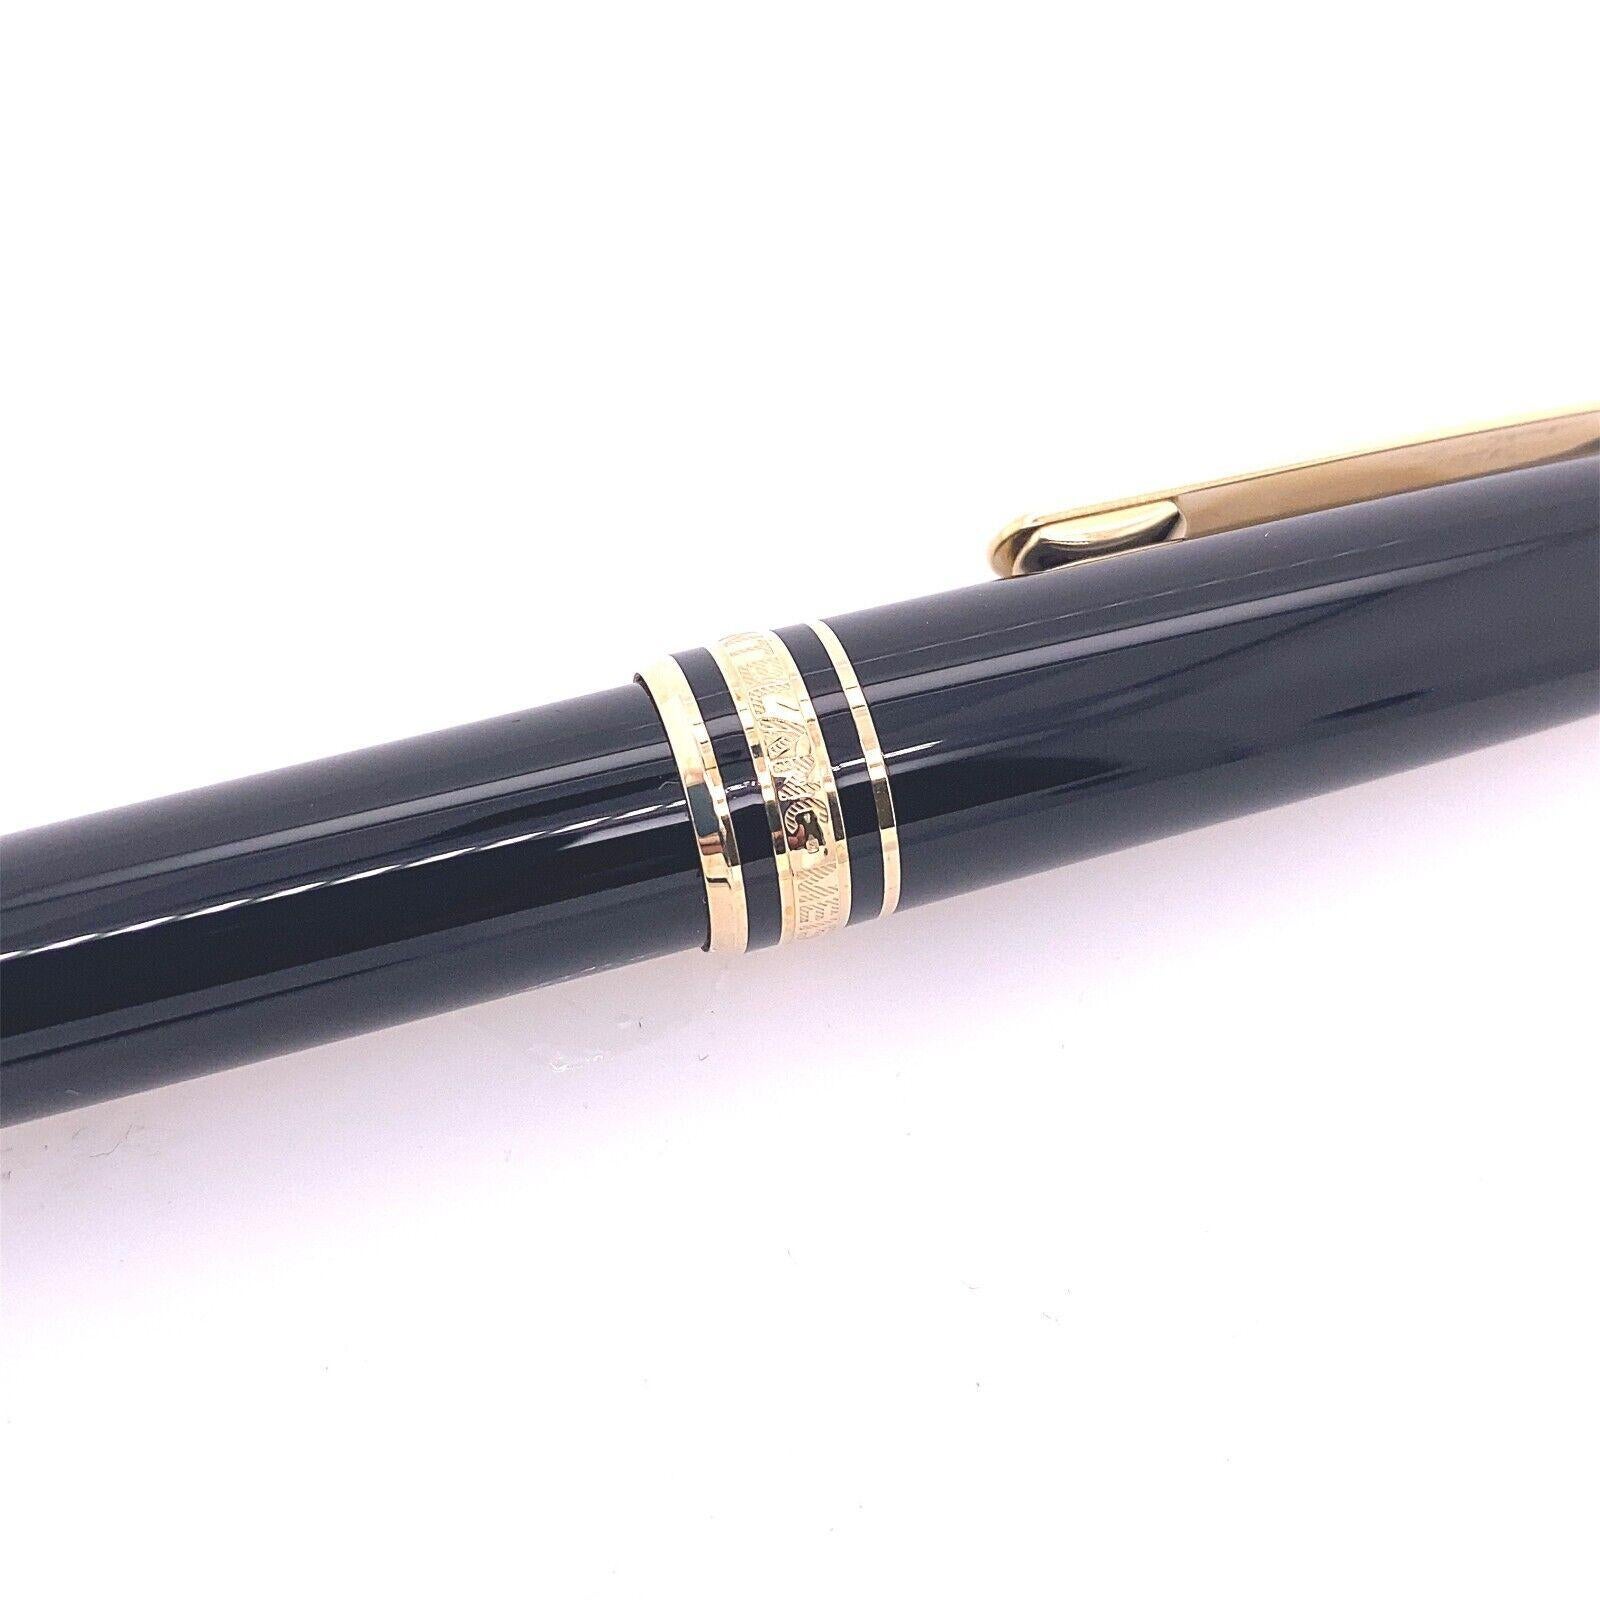 Le stylo à bille Meisterstück de Montblanc se définit par un travail artisanal de qualité.
Un stylo Montblanc est le symbole d'un instrument d'écriture distingué, vous pouvez faire de votre écriture une œuvre d'art. détails pour obtenir une finition